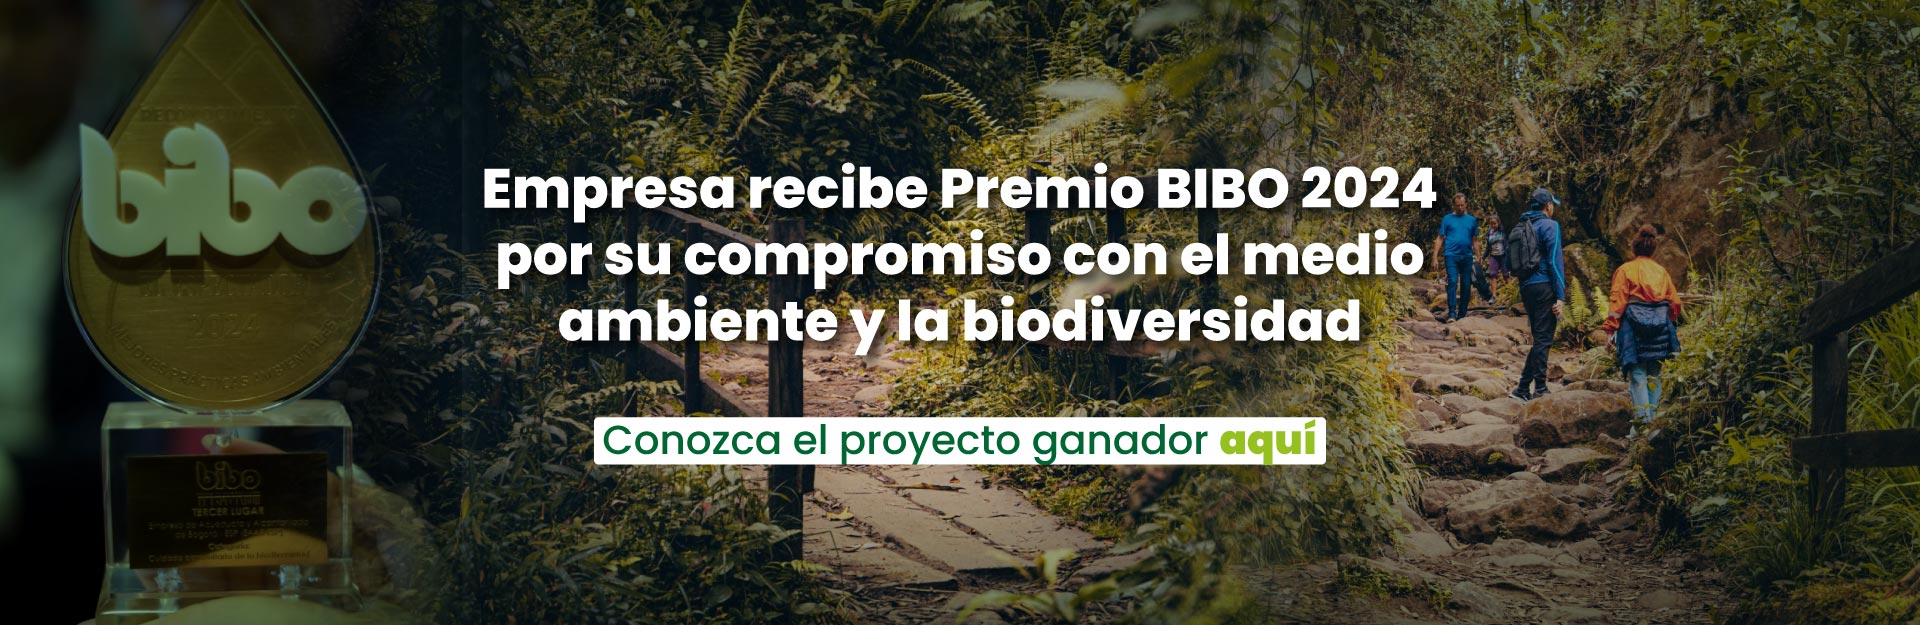 EAAB recibe Premio BIBO 2024 por su compromiso con el medio ambiente y la biodiversidad